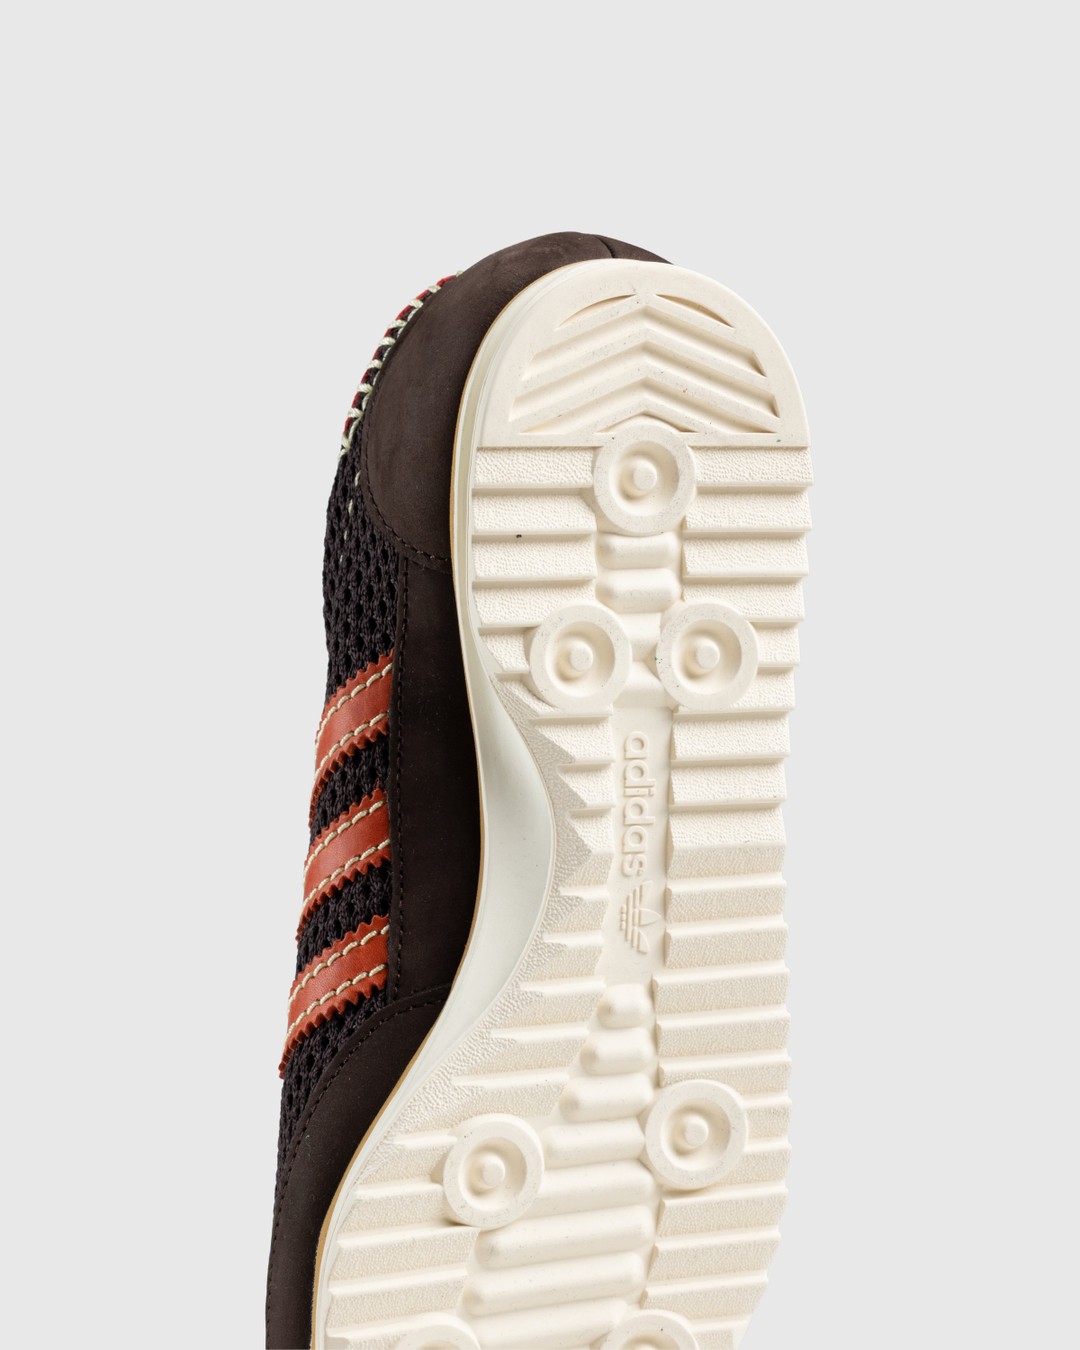 Adidas x Wales Bonner – SL72 Knit Dark Brown - Sneakers - Brown - Image 6